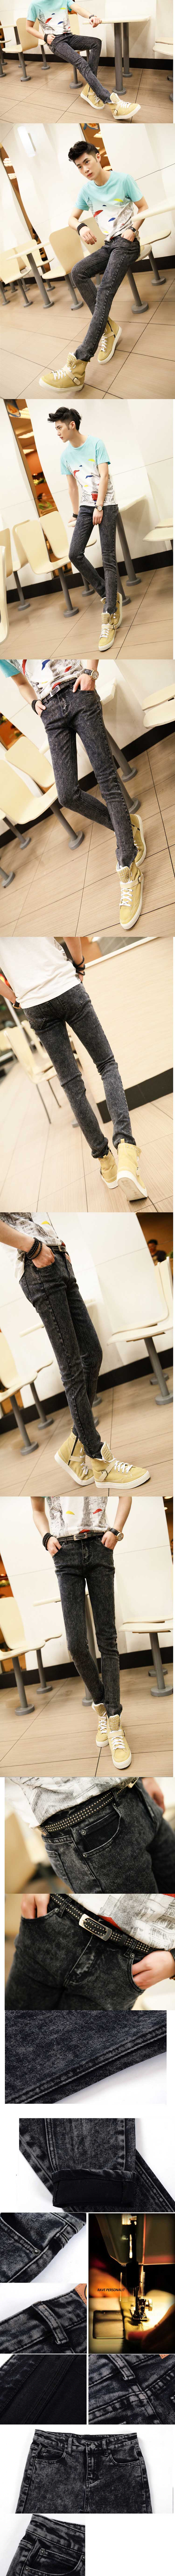 jual celana jeans pria model slimfit, terbuat dari bahan berkualitas strech dan desain keren, temukan koleksi celana jeans pria slimfit terlengkap disini